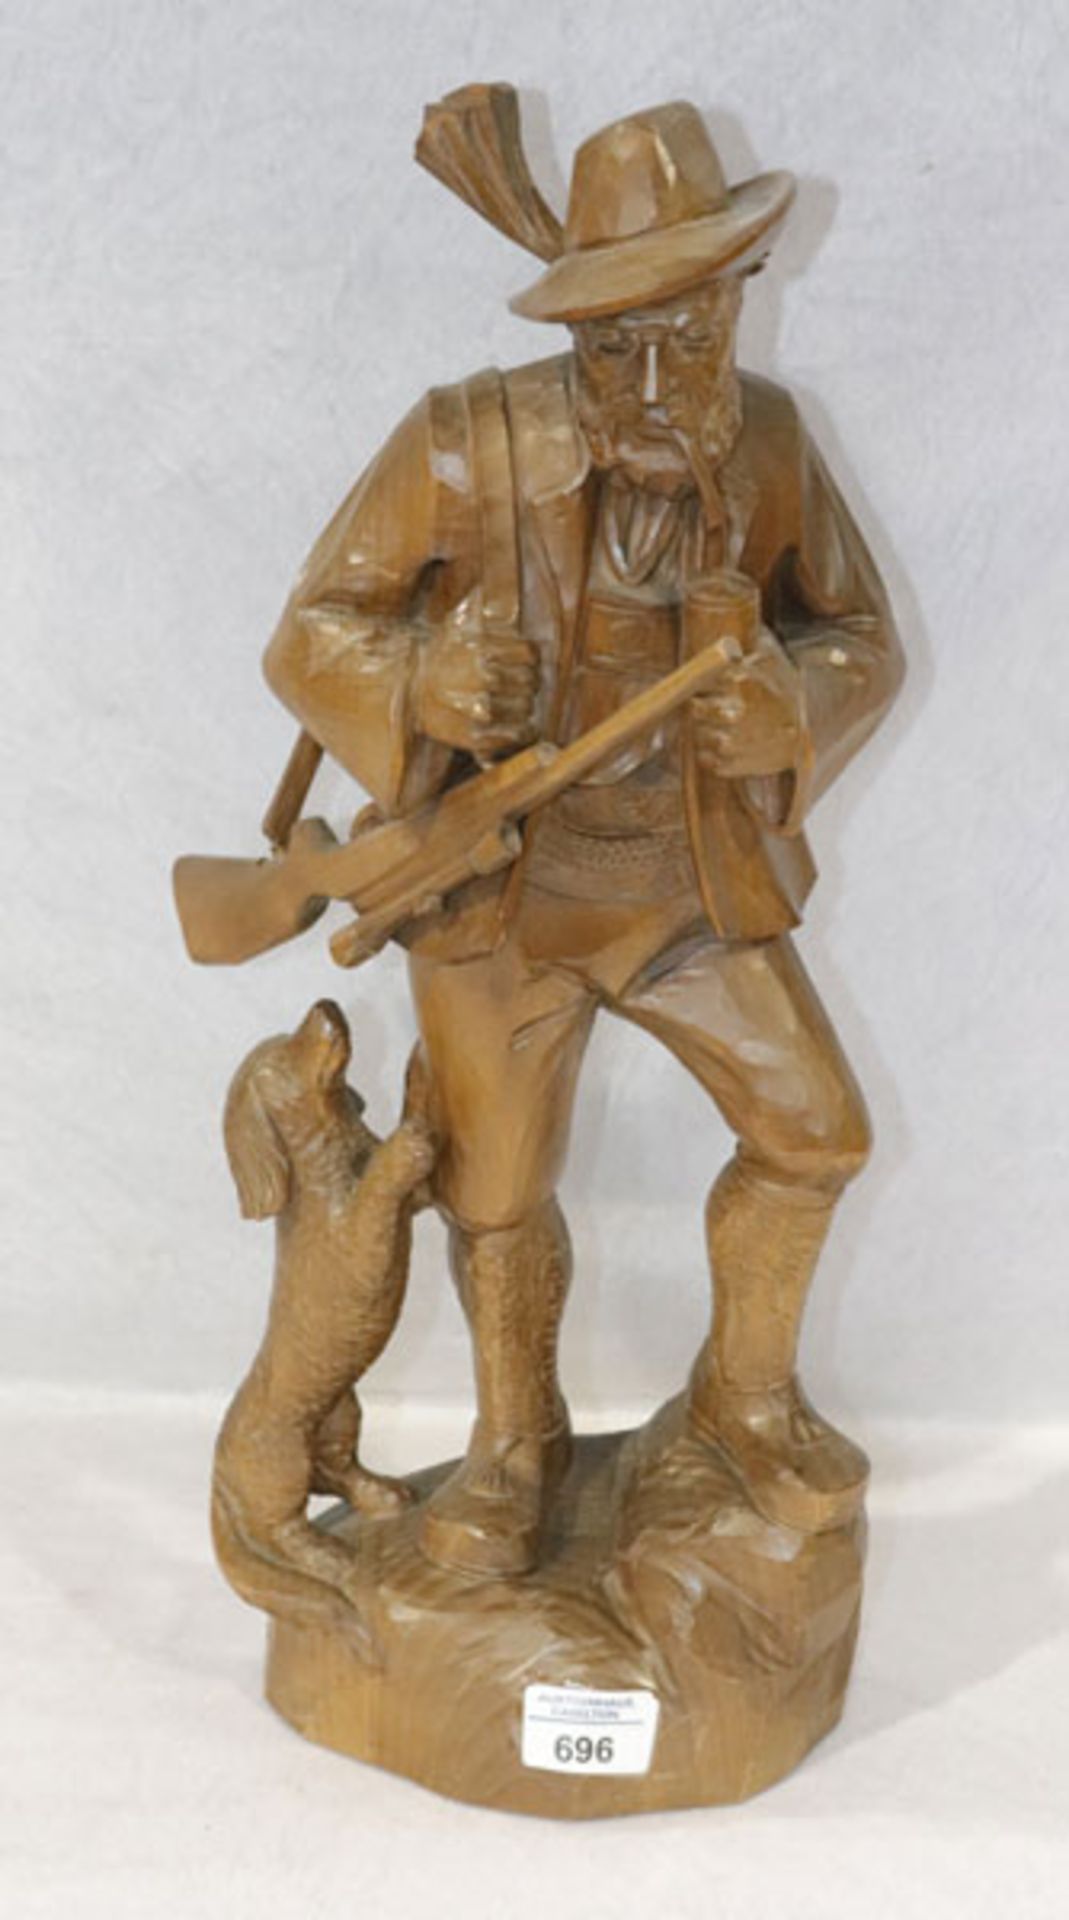 Holz Figurenskulptur 'Jäger mit Hund', dunkel gebeizt, H 50 cm, B 22 cm, T 12 cm, leicht bestossen